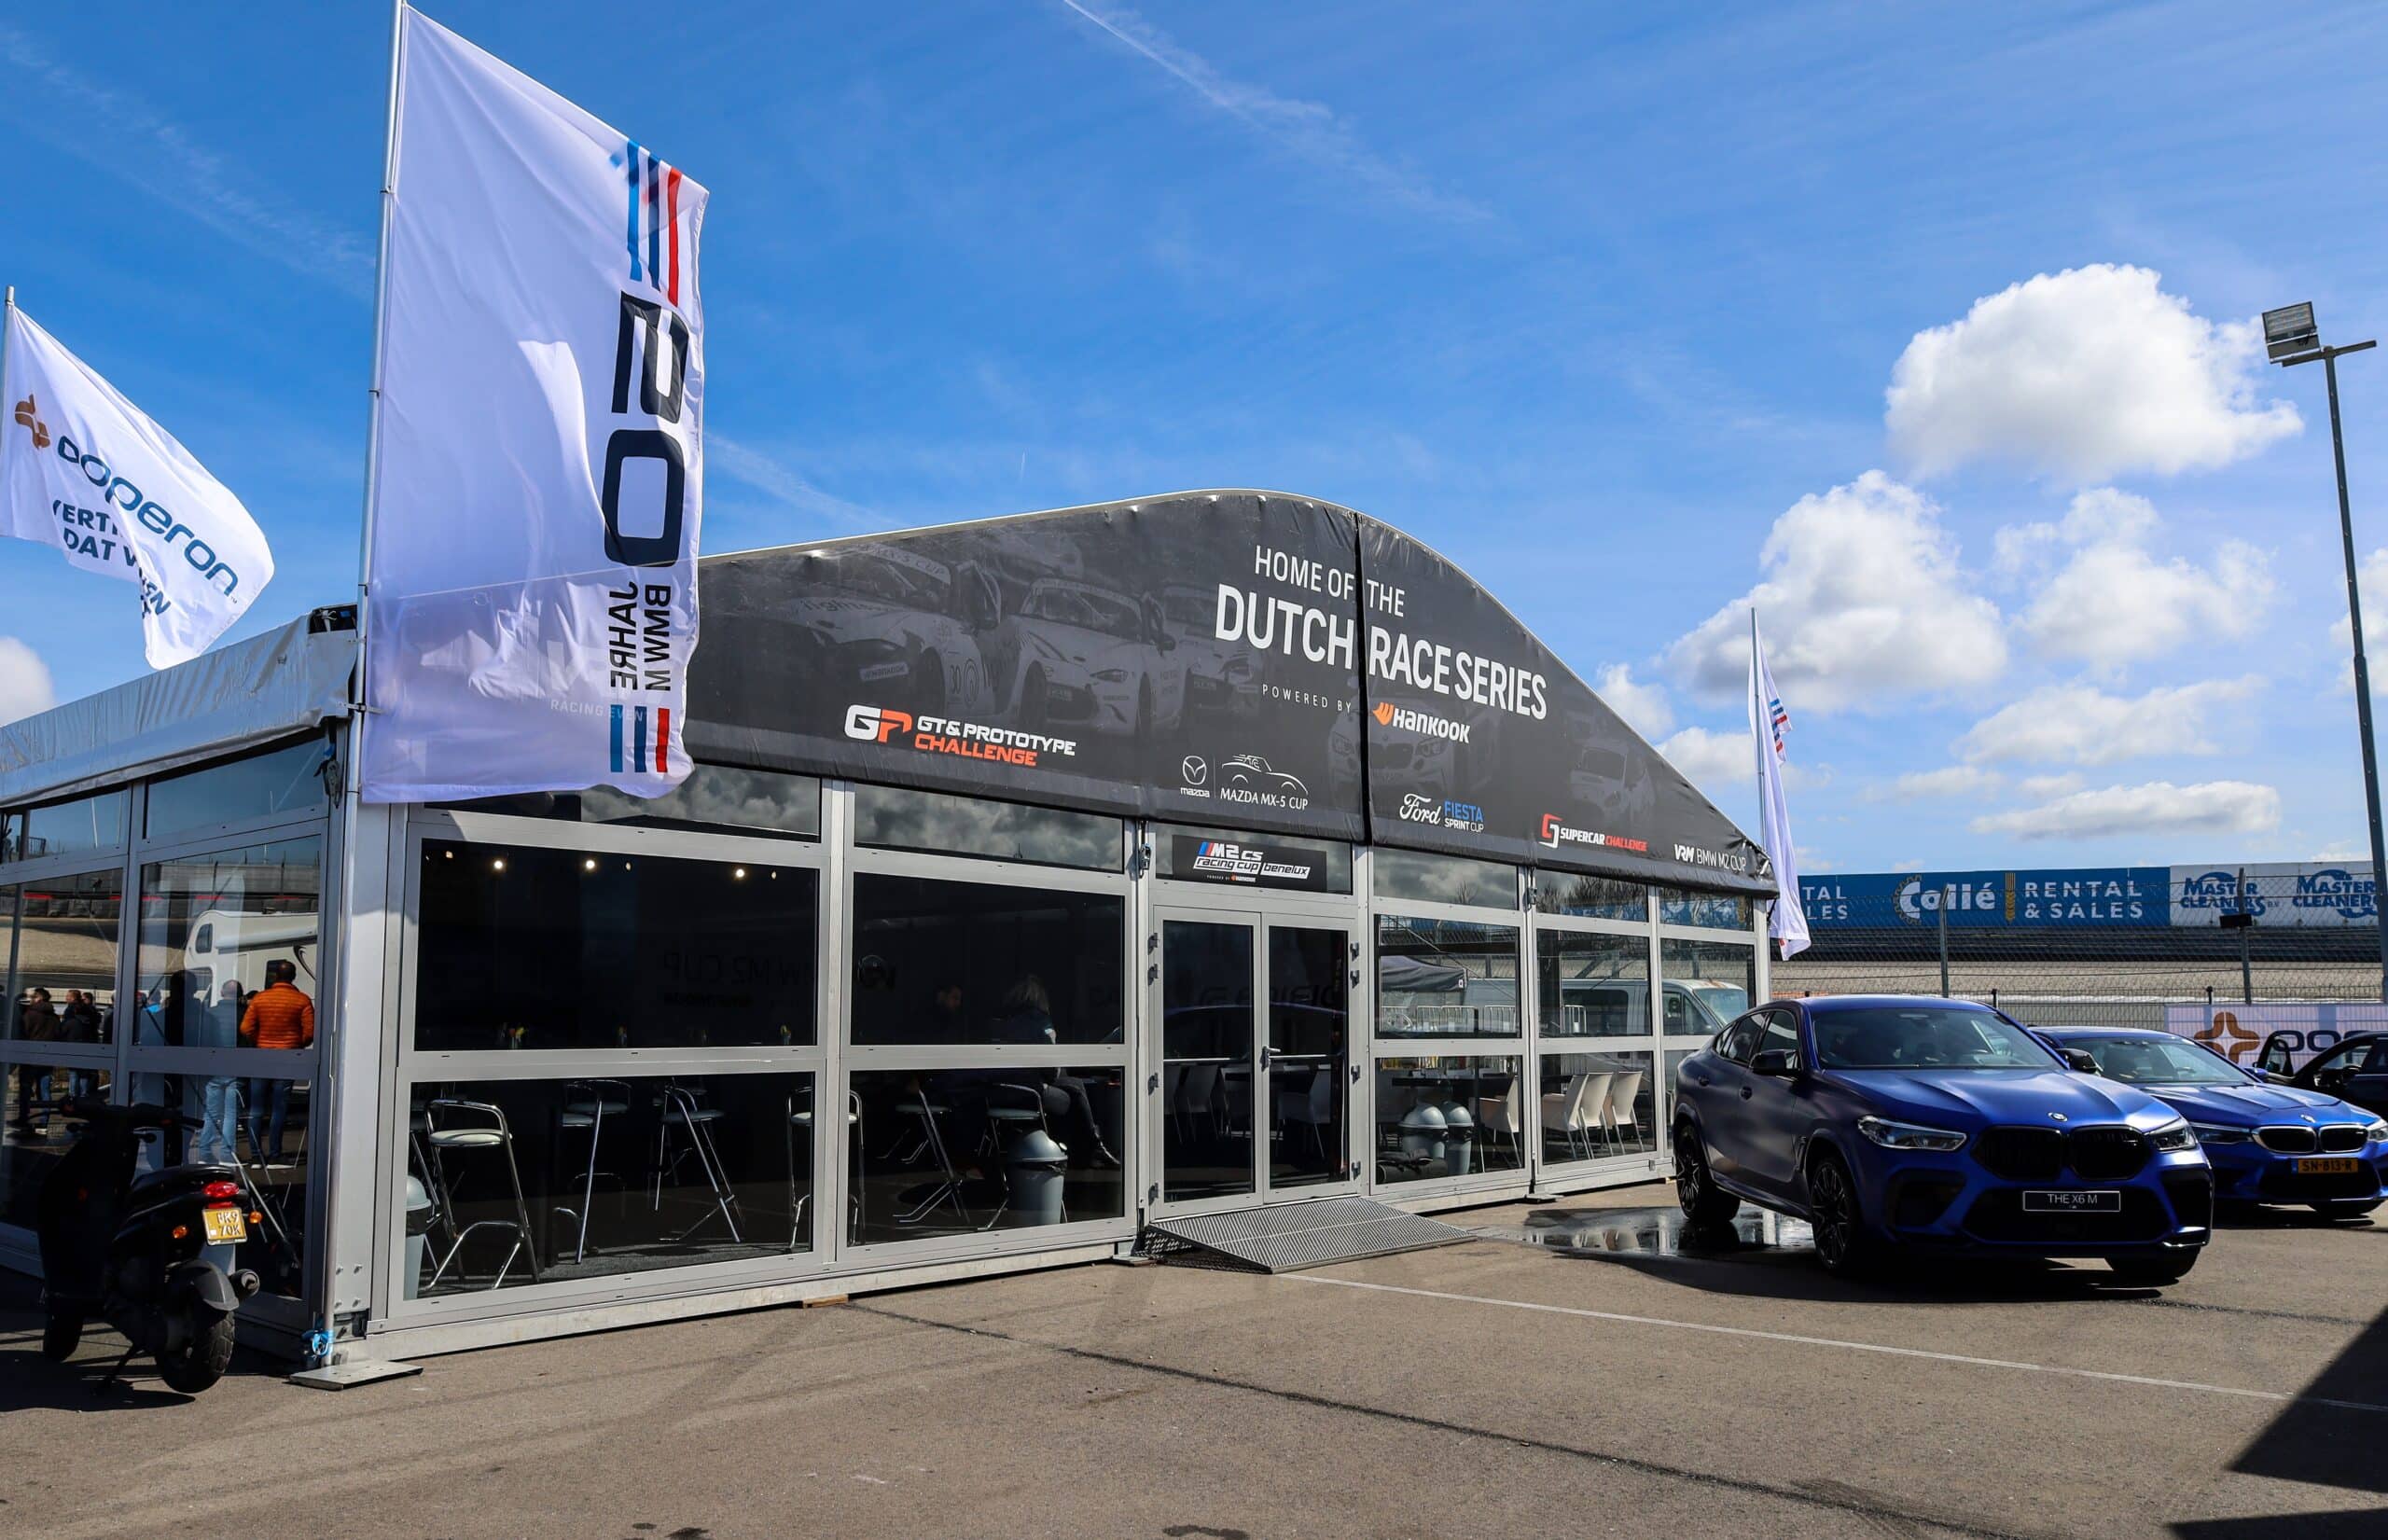 Aluhal waar groot 'Home of the Dutch race series' op staat. Links van de Aluhal staat een grote witte vlag van BMW en aan de rechterkant staan twee blauwe BMW's. Om de Aluhal heen bevind zich een racebaan